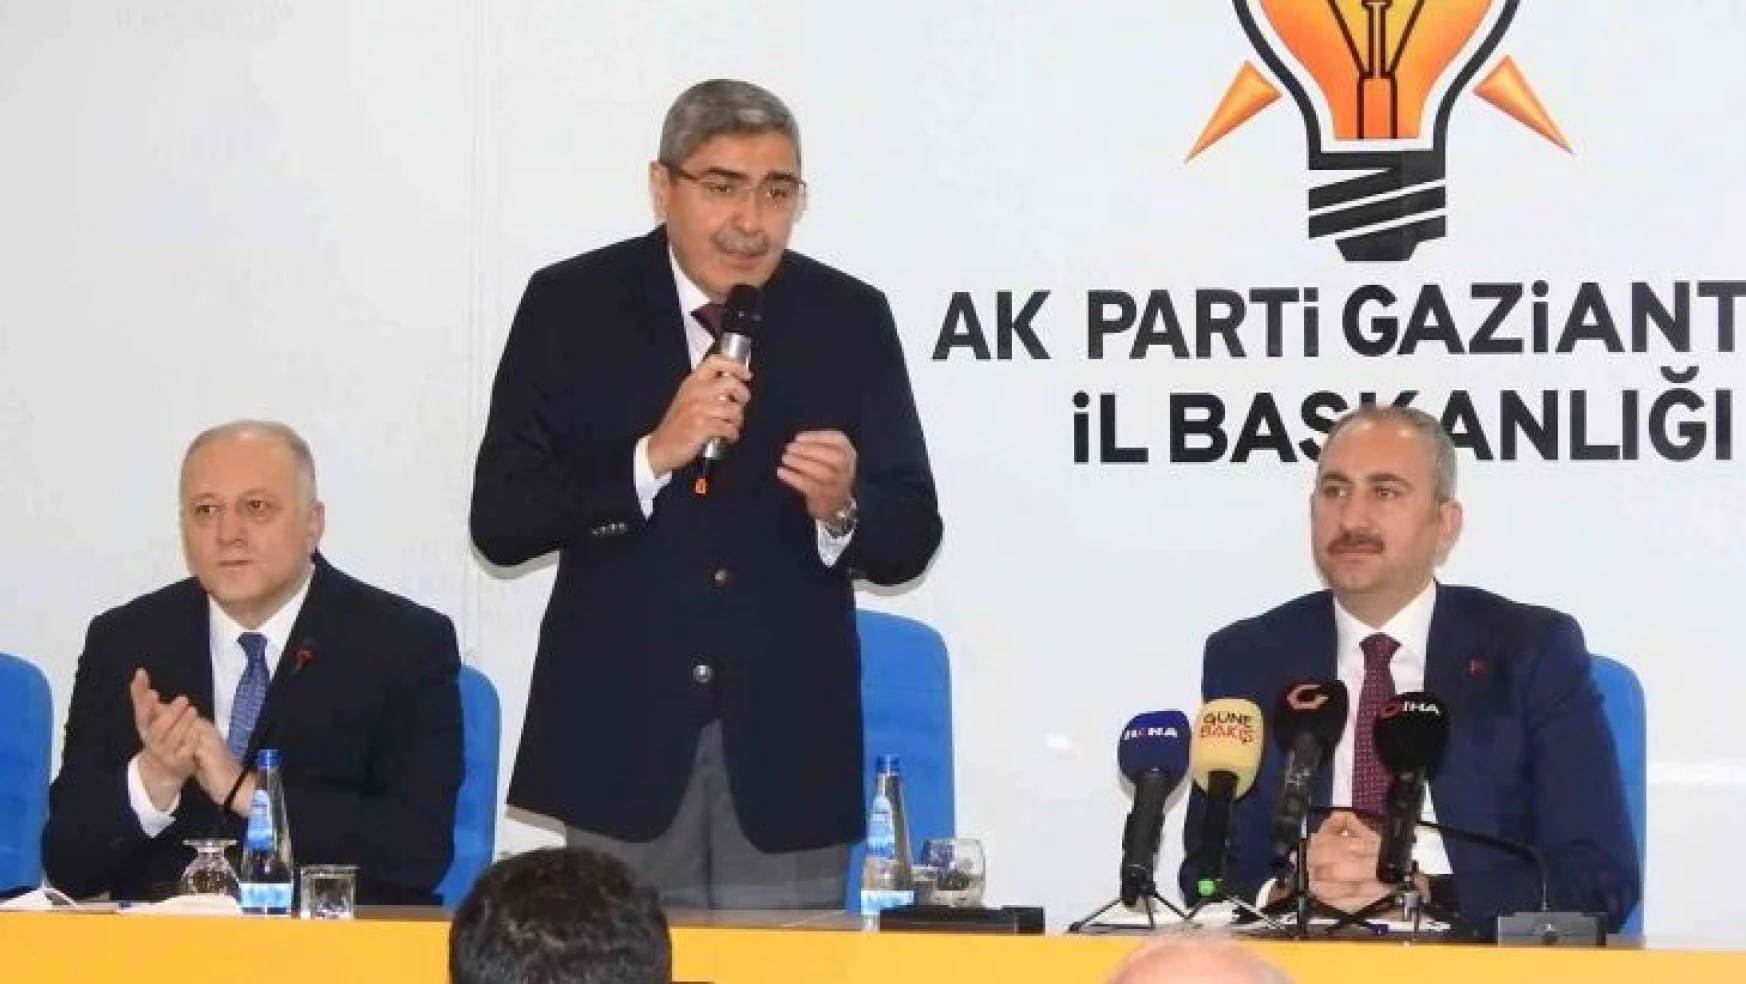 Adalet Eski Bakanı Abdulhamit Gül'den makam değerlendirmesi